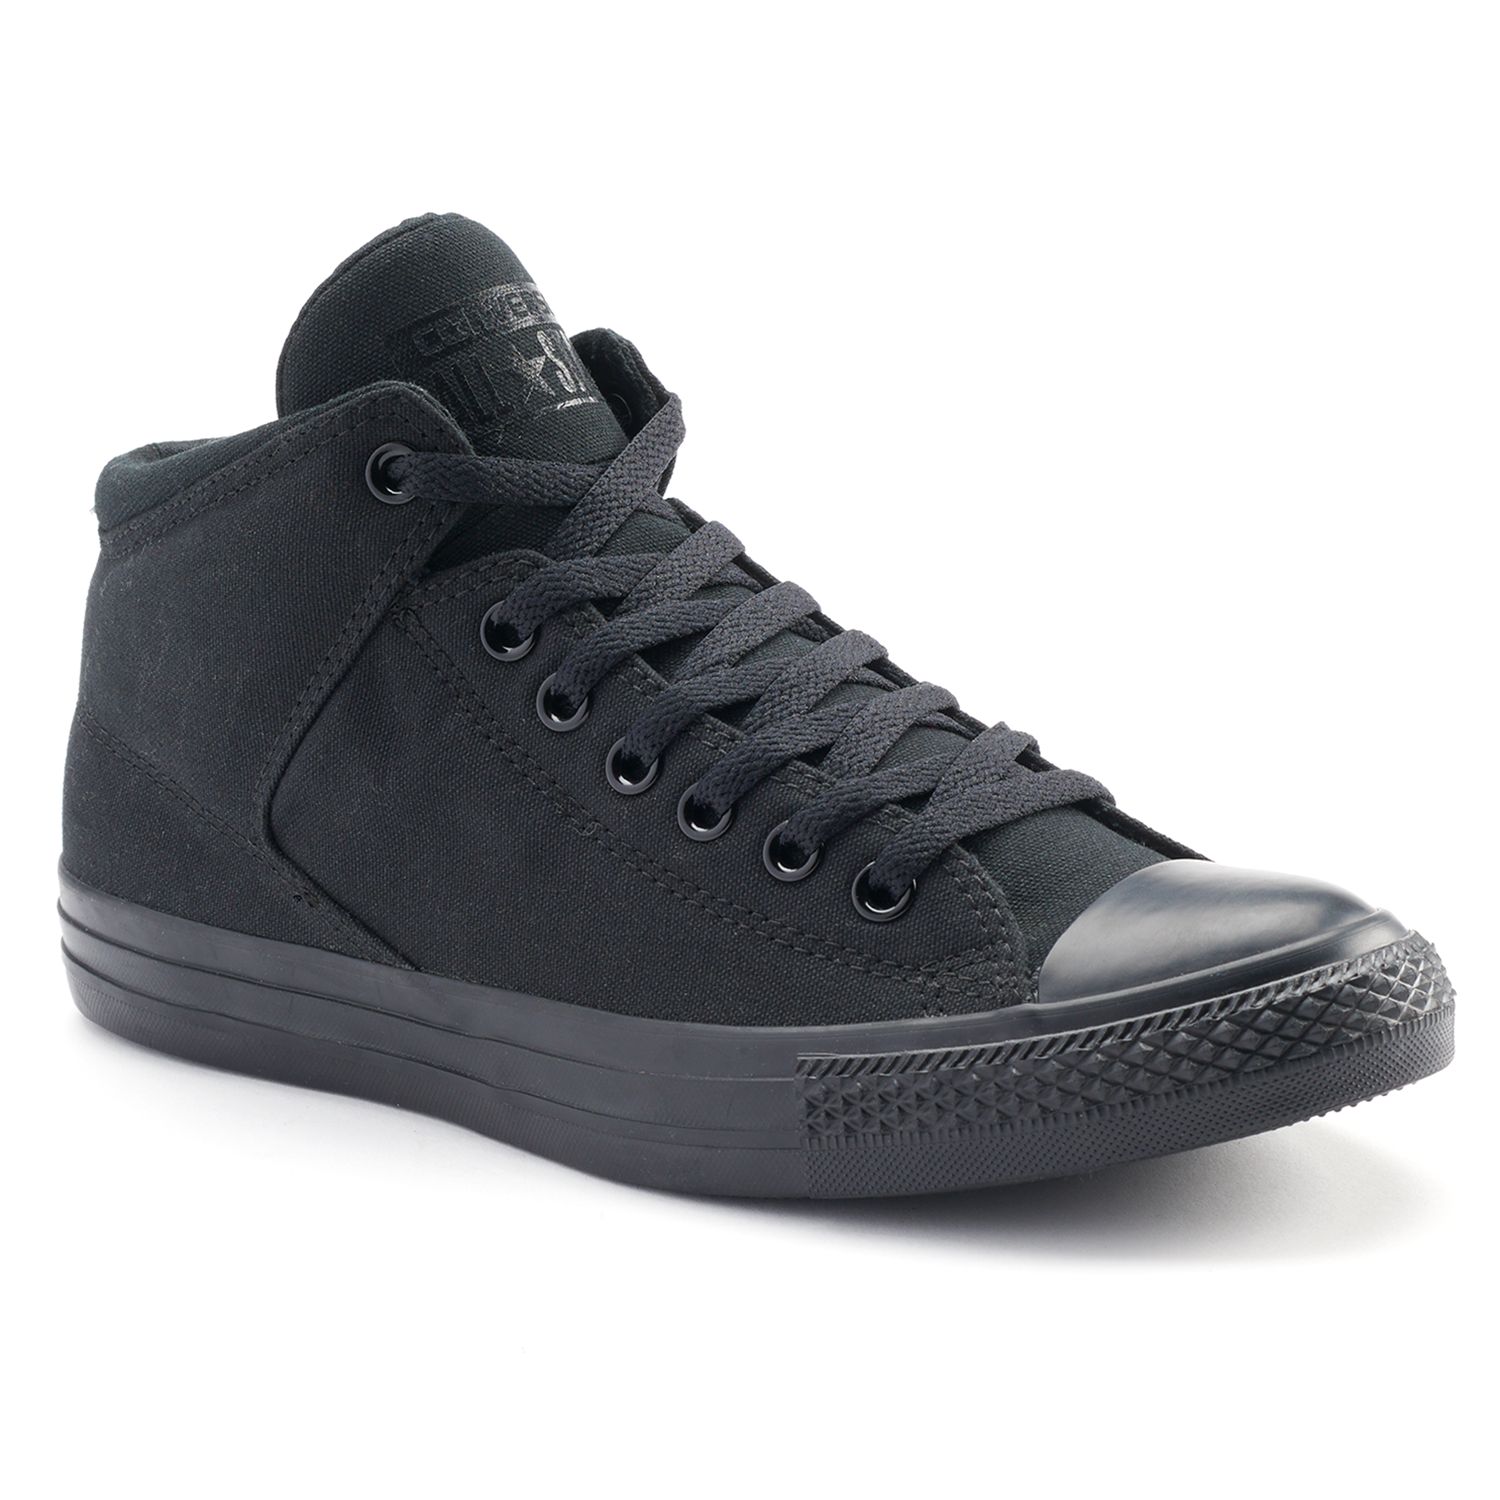 black converse tennis shoes